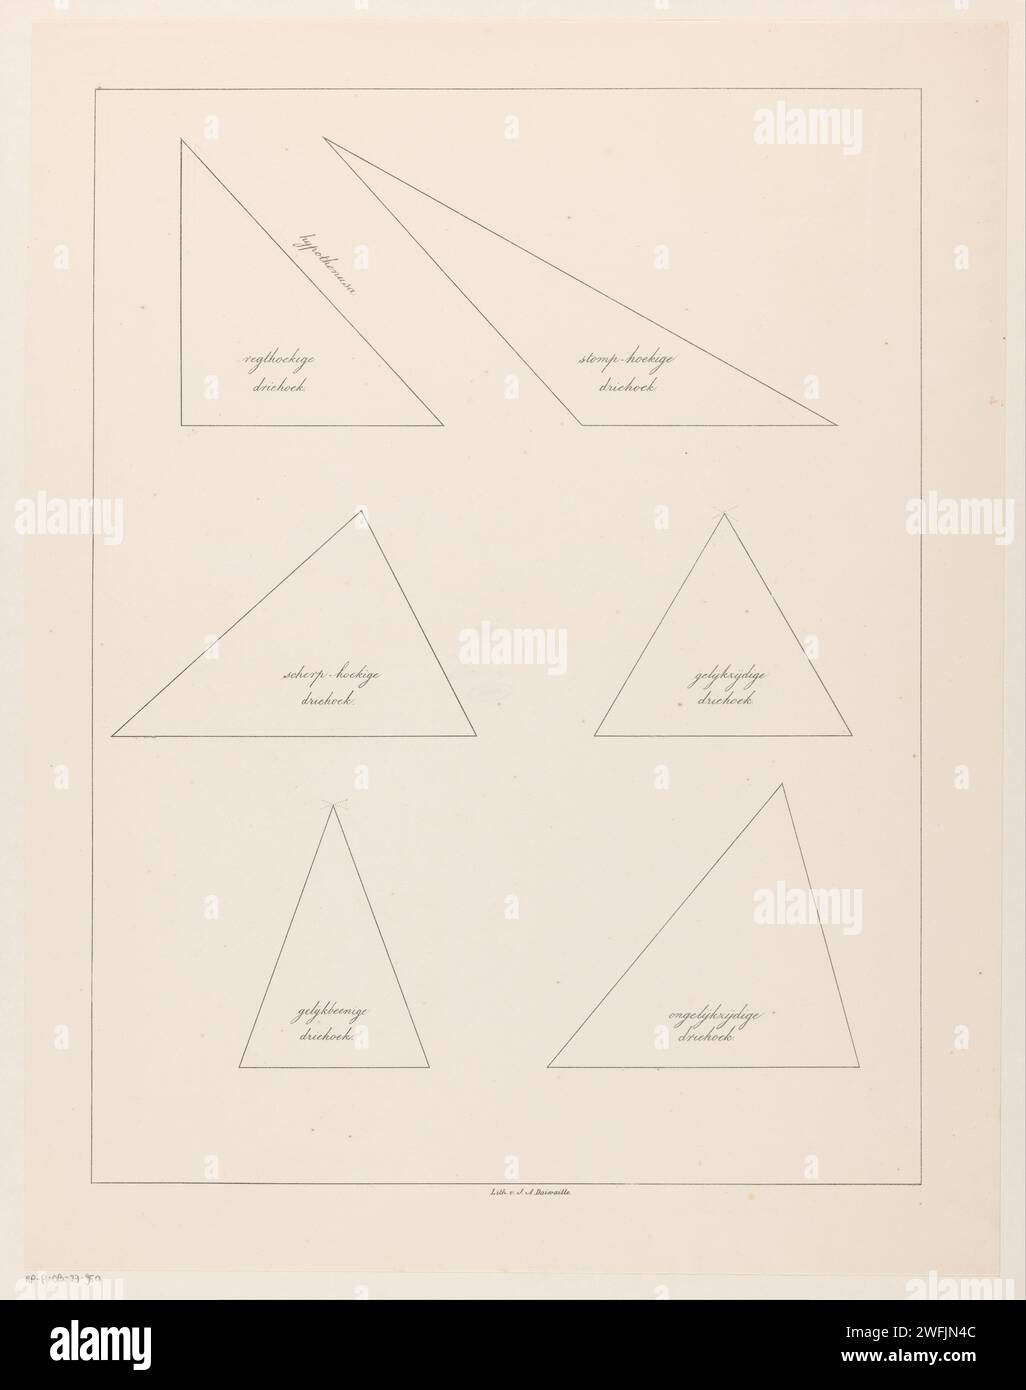 Seis triángulos, Jean Augustin Daiwaille, 1820 - 1833 impresión en las esquinas son los nombres de las esquinas como "triángulo equilátero" o "triángulo de esquina estomacal". Amsterdam papel isosceles triángulo. triángulo equilátero Foto de stock